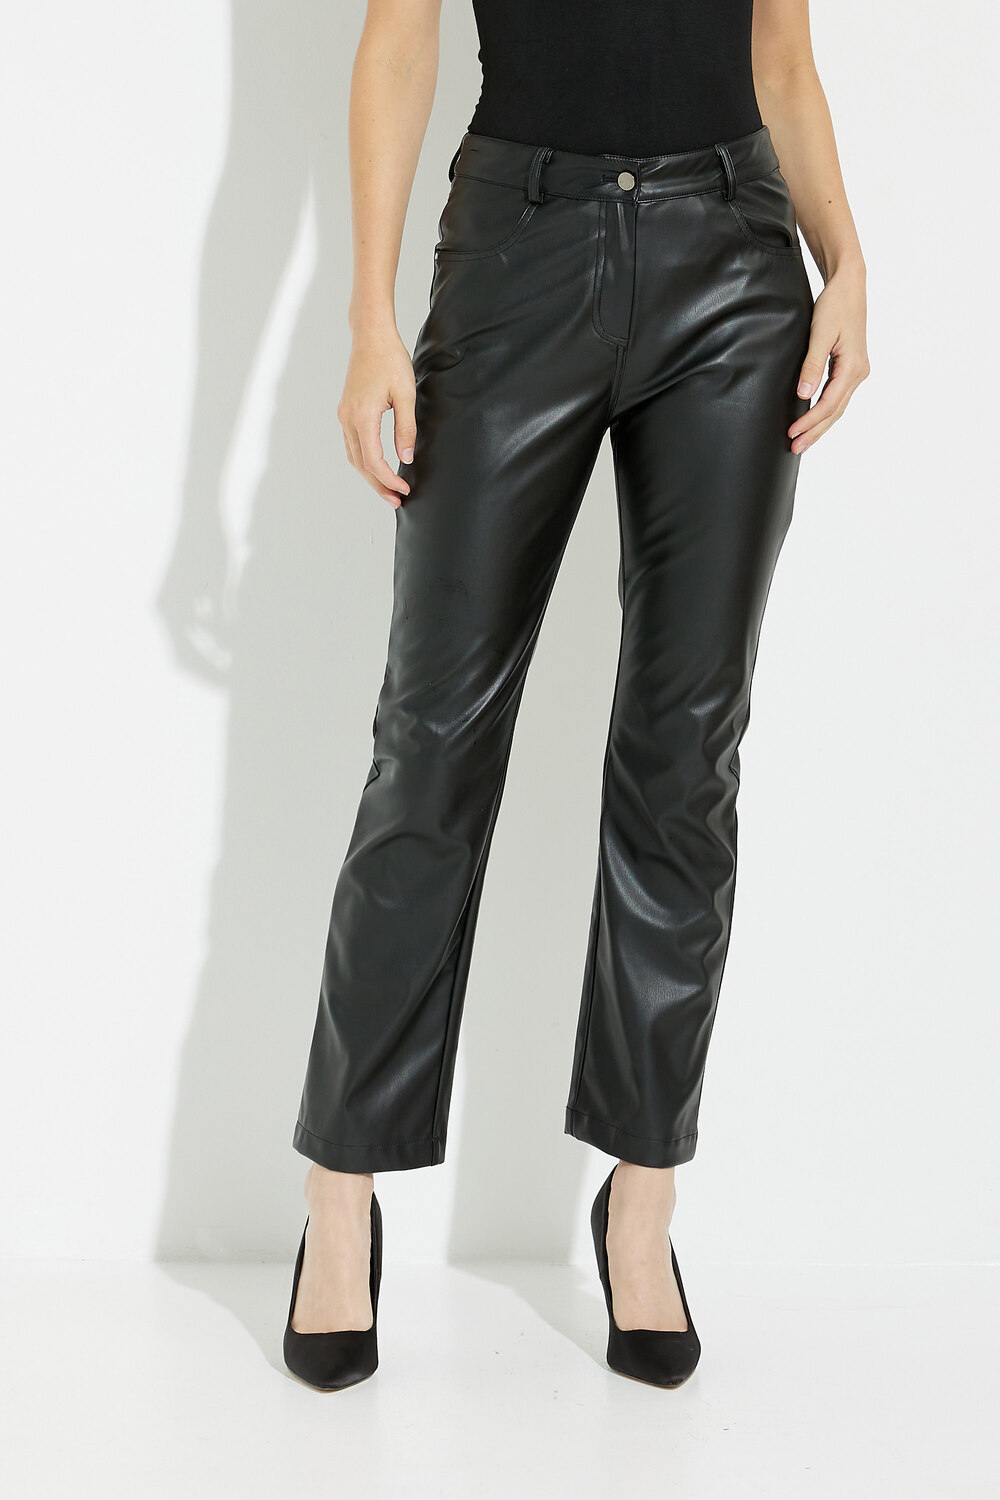 Pantalon noir en faux cuir modèle A40069. Noir